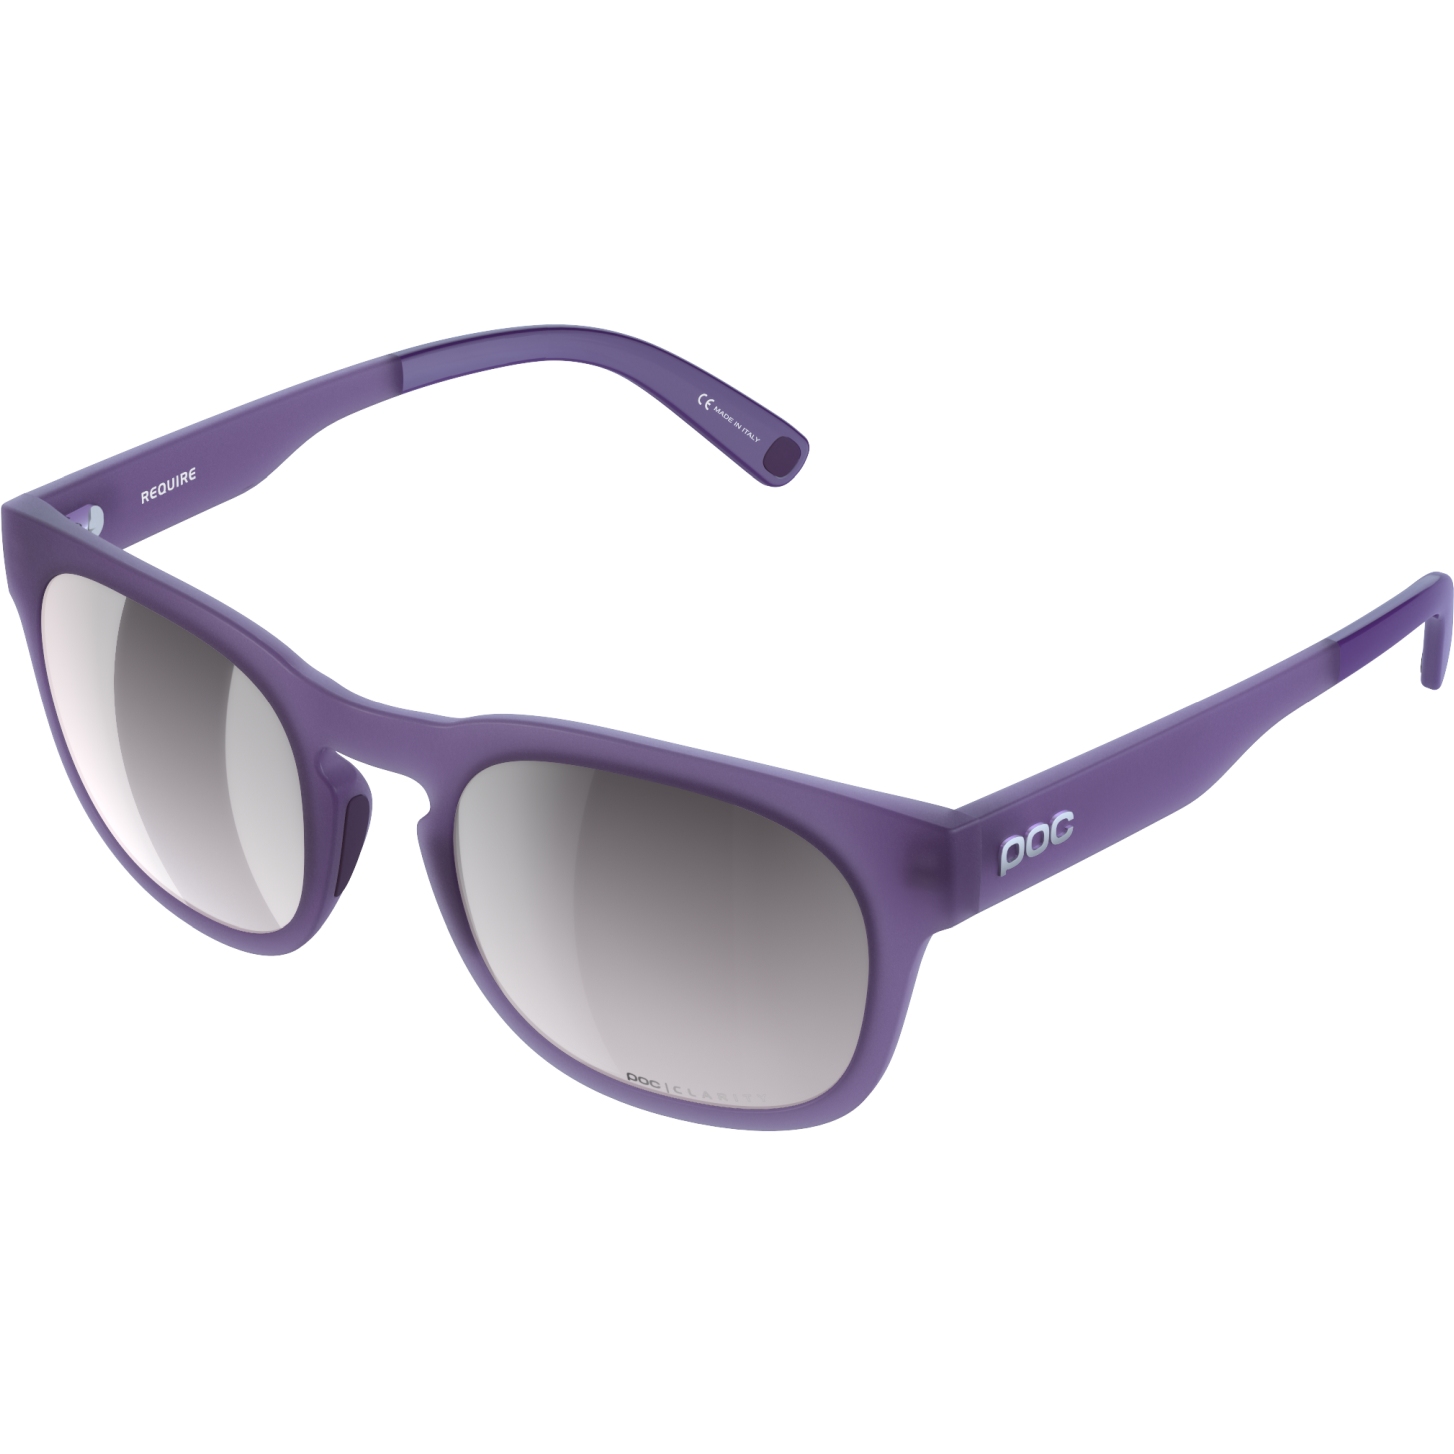 Produktbild von POC Require Brille - Mirror Lens - Sapphire Purple Translucent / Violet/Silver